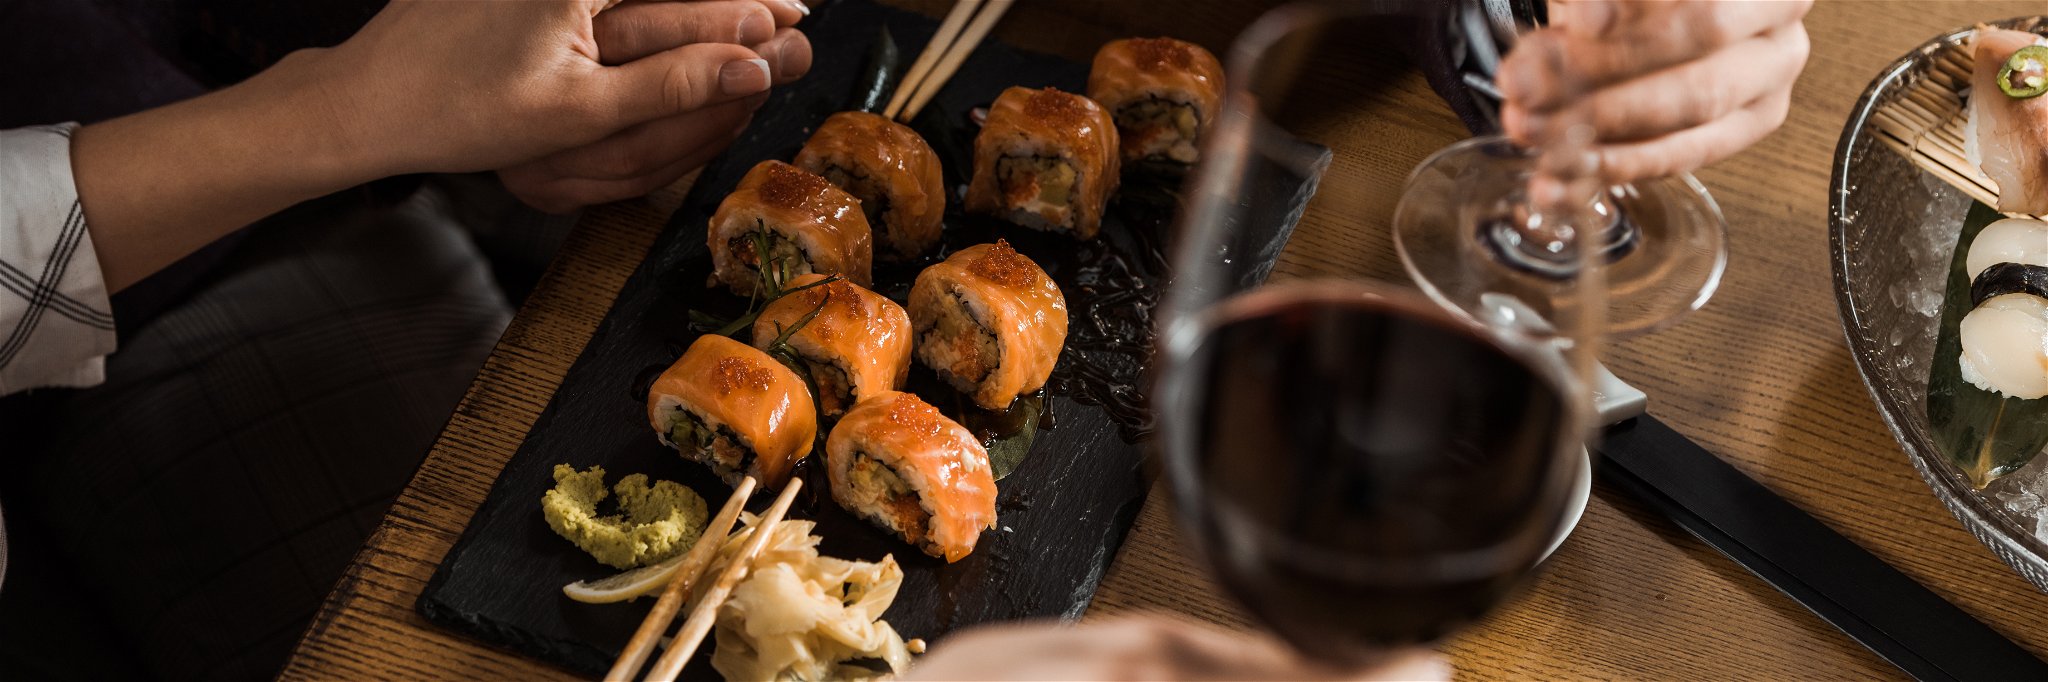 Ob Sushi, Nigiri oder Maki – österreichische Weine mit ihrer breiten Vielfalt an Rebsorten und Stilen bieten ein spannendes »Wine and Food-Pairing«.